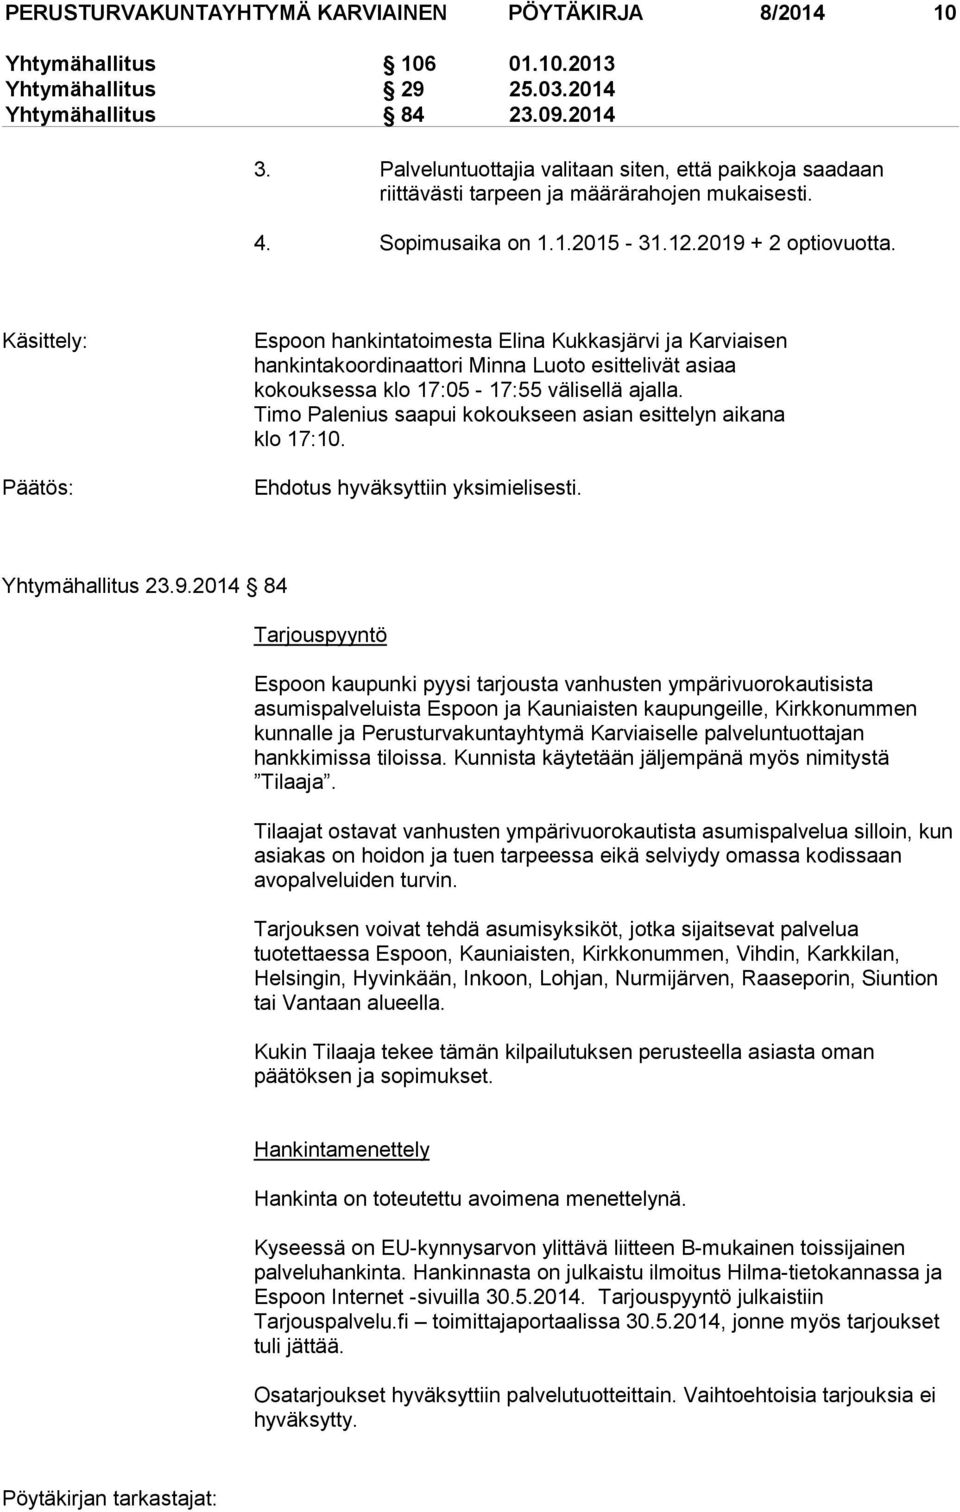 Käsittely: Päätös: Espoon hankintatoimesta Elina Kukkasjärvi ja Karviaisen hankintakoordinaattori Minna Luoto esittelivät asiaa kokouksessa klo 17:05-17:55 välisellä ajalla.